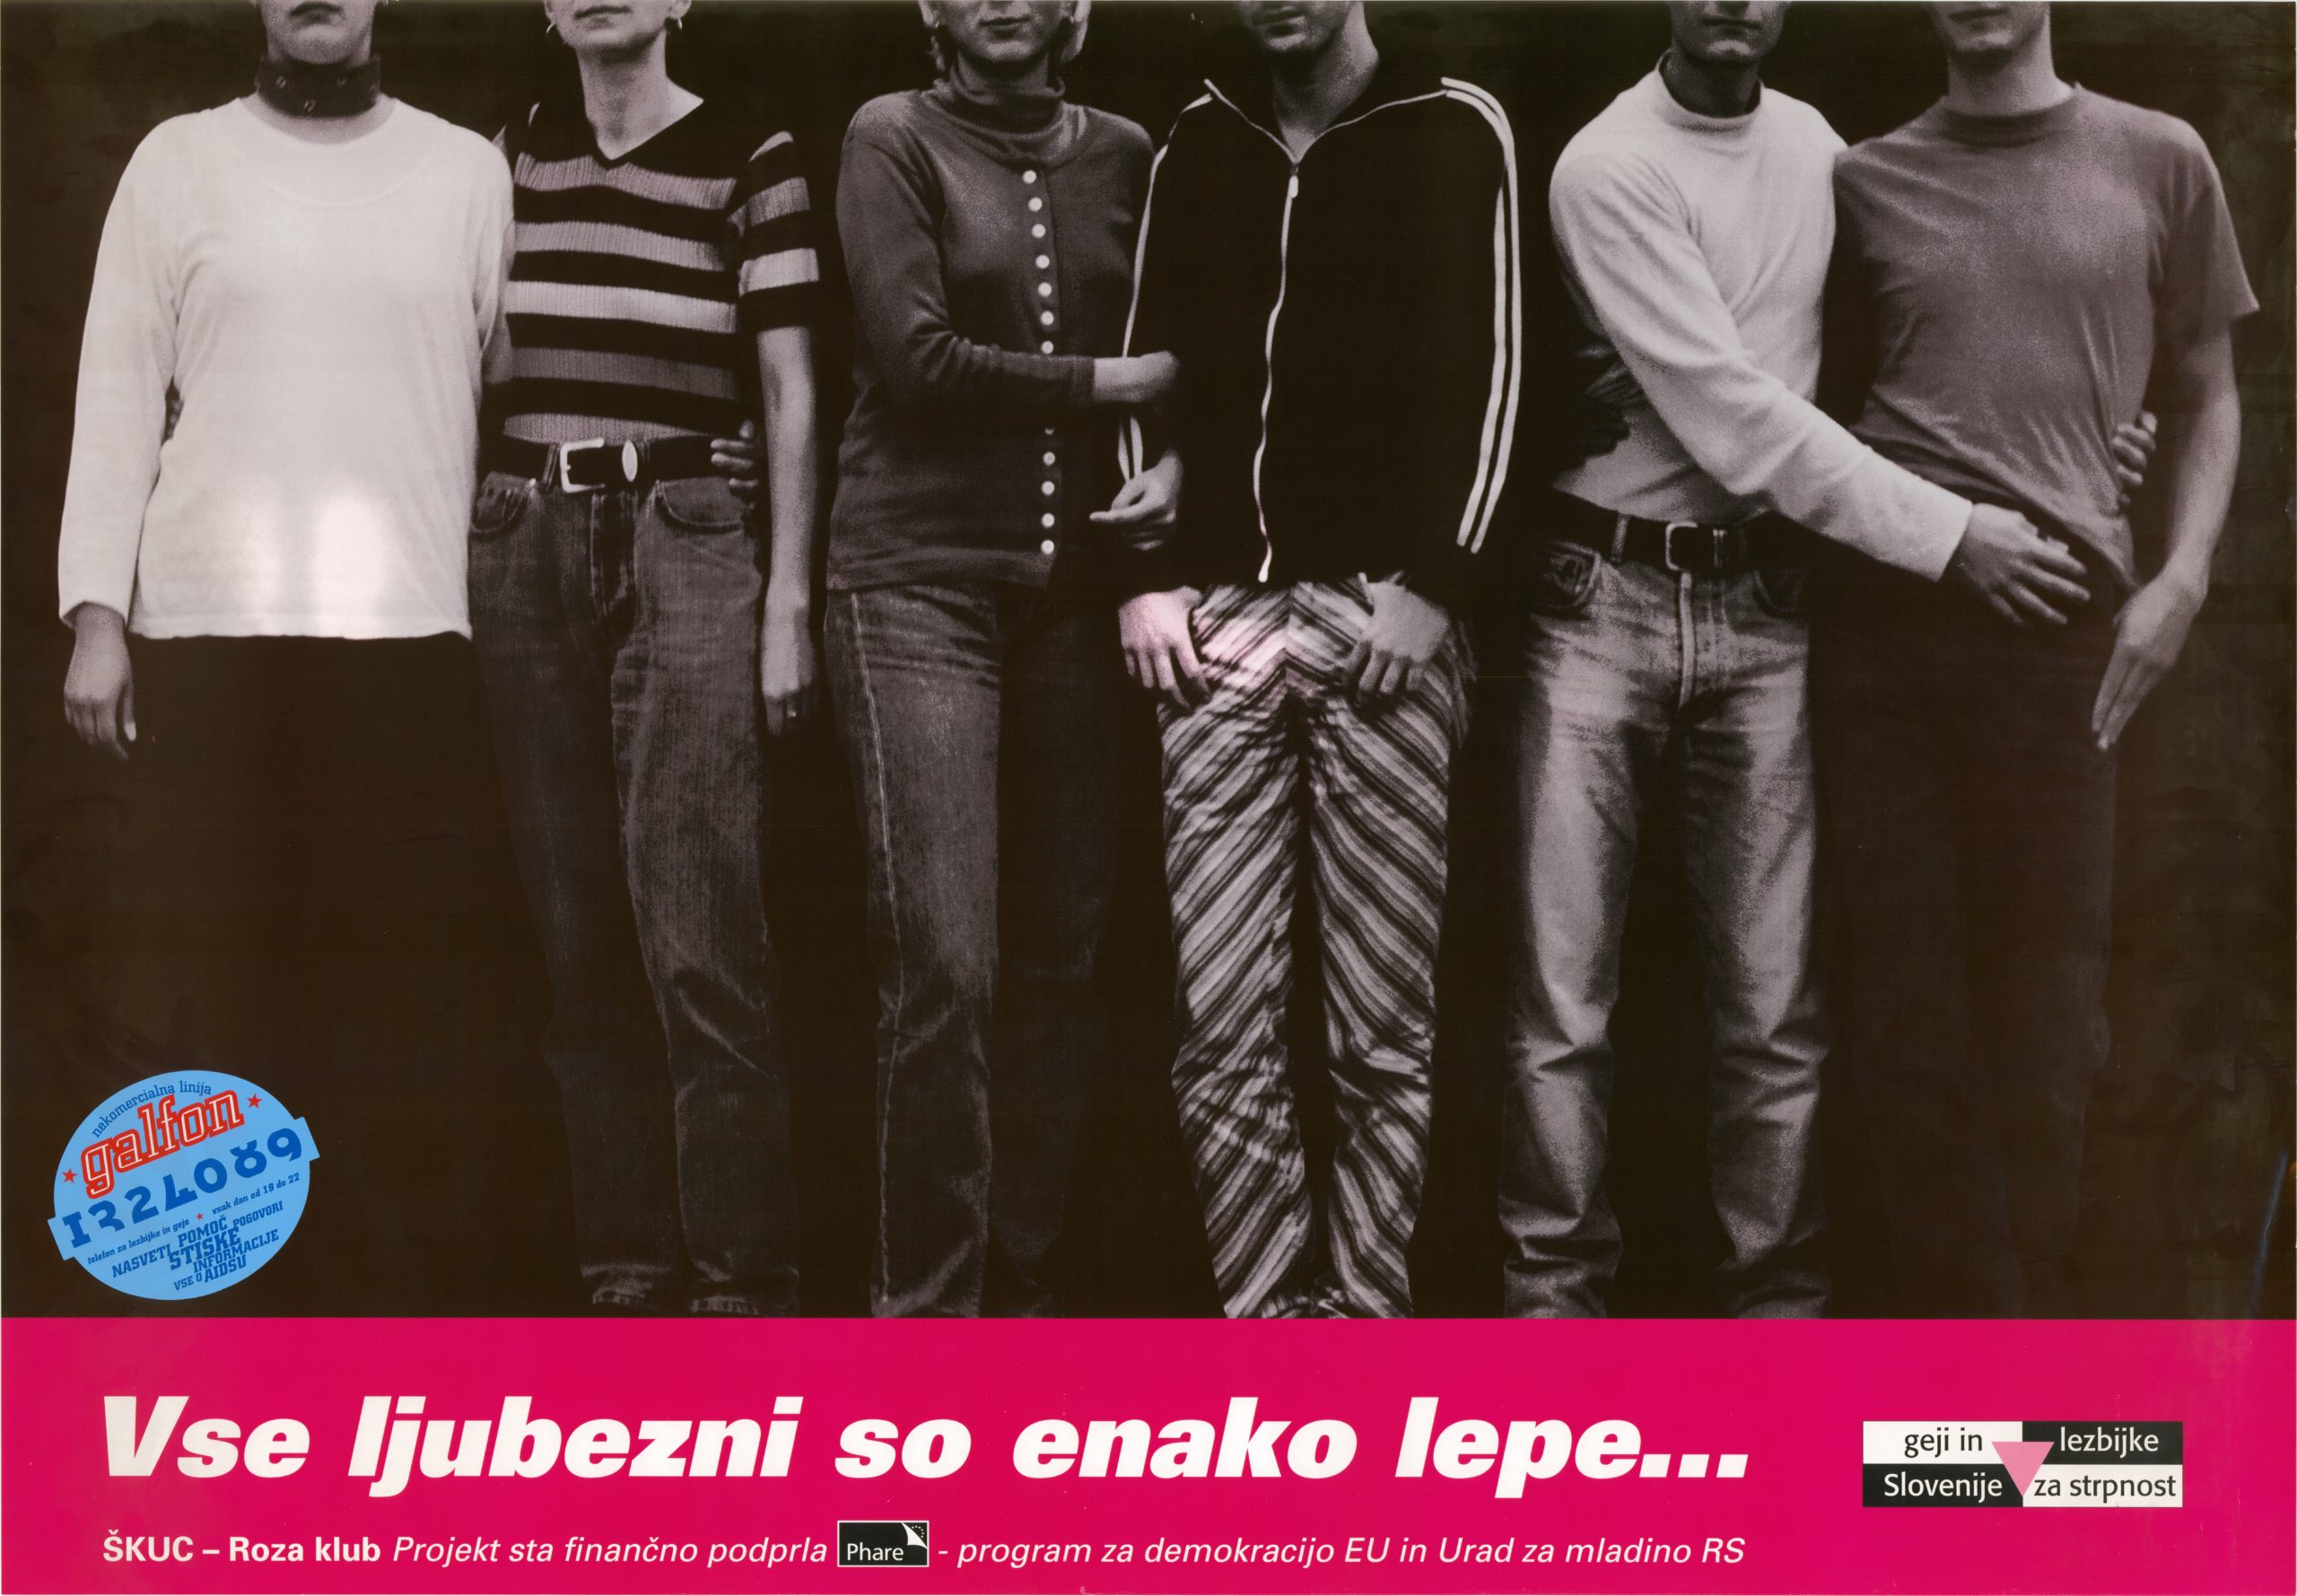 Vse ljubezni so enako lepe, plakat, ŠKUC-Roza klub, januar 1998